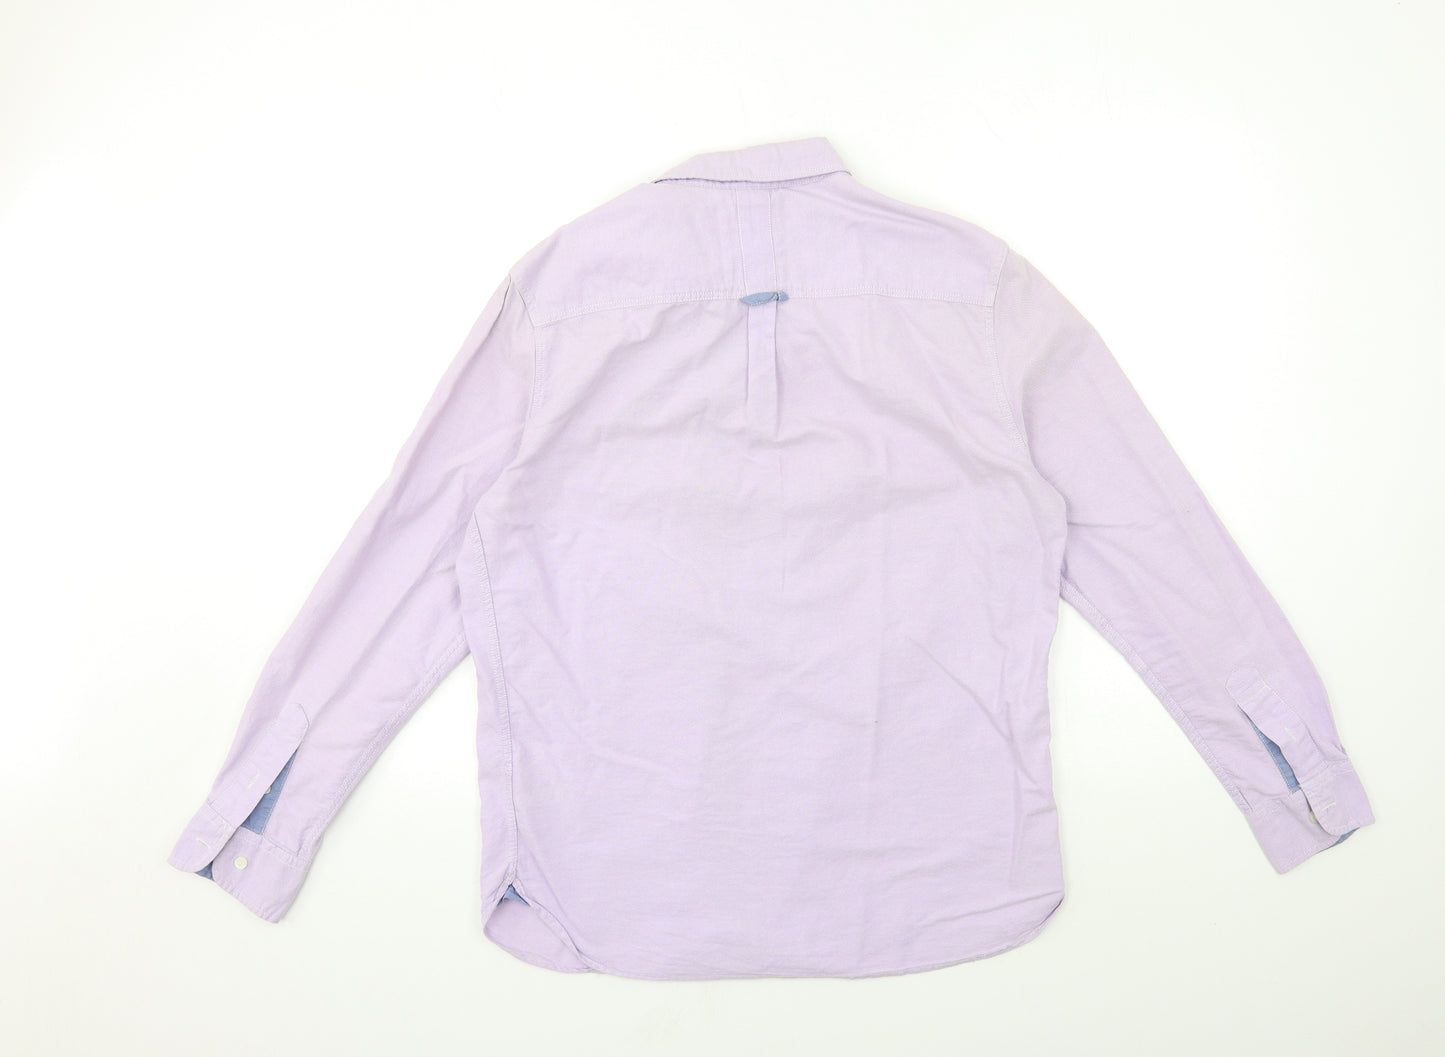 Jasper Conran Mens Purple    Dress Shirt Size M